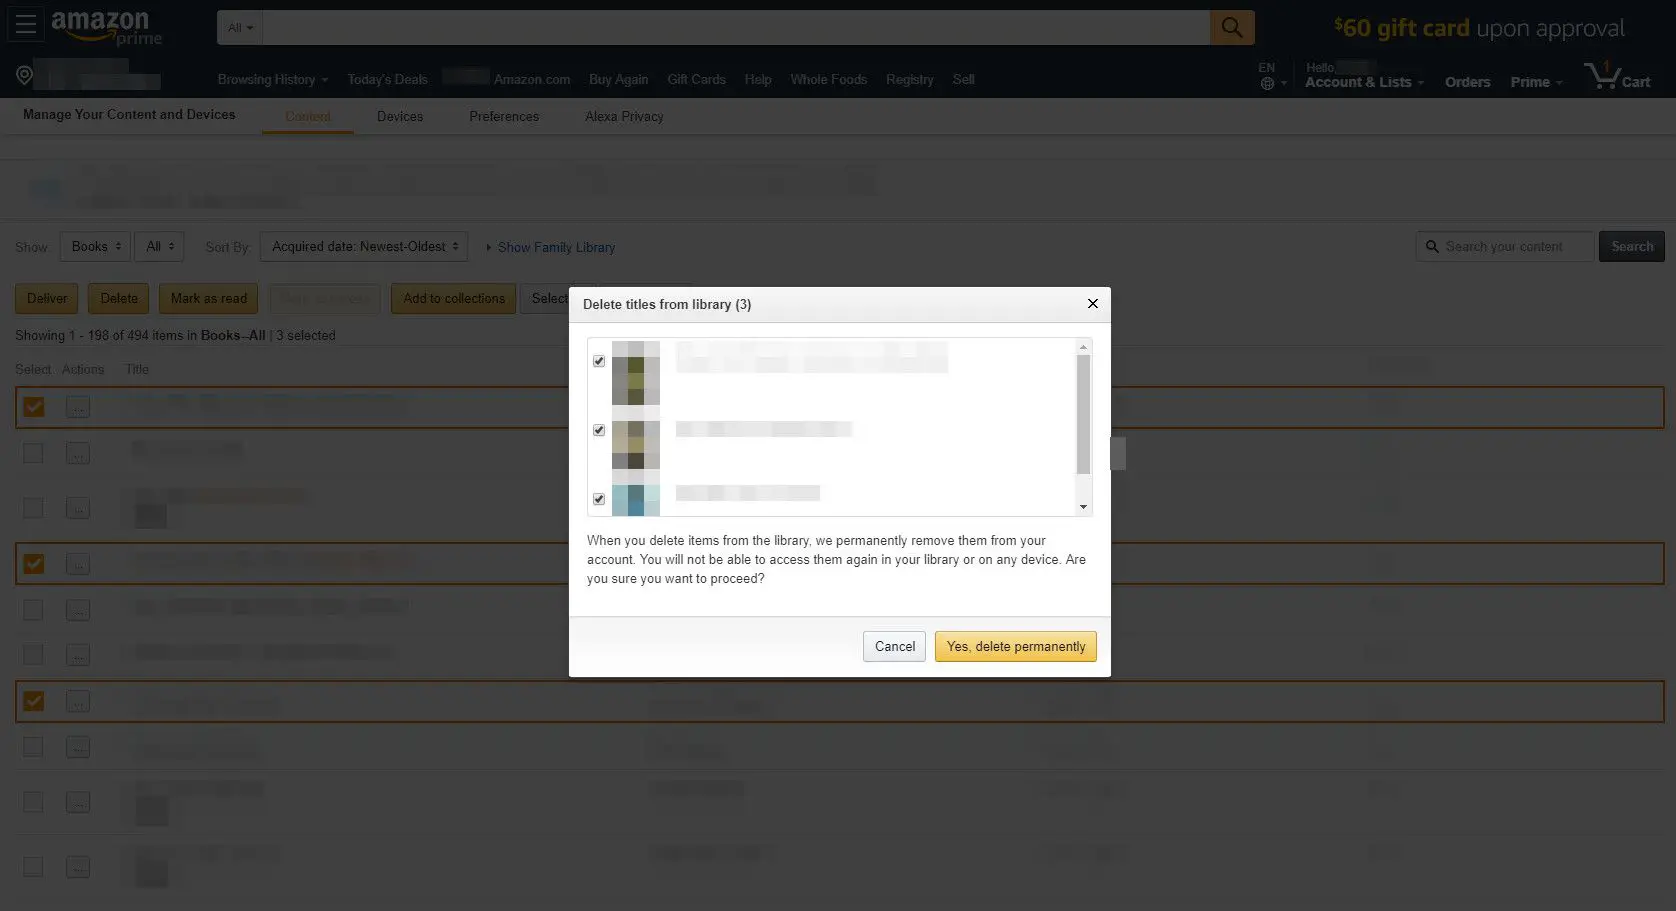 Amazon.com com caixa de diálogo de exclusão de livro exibida